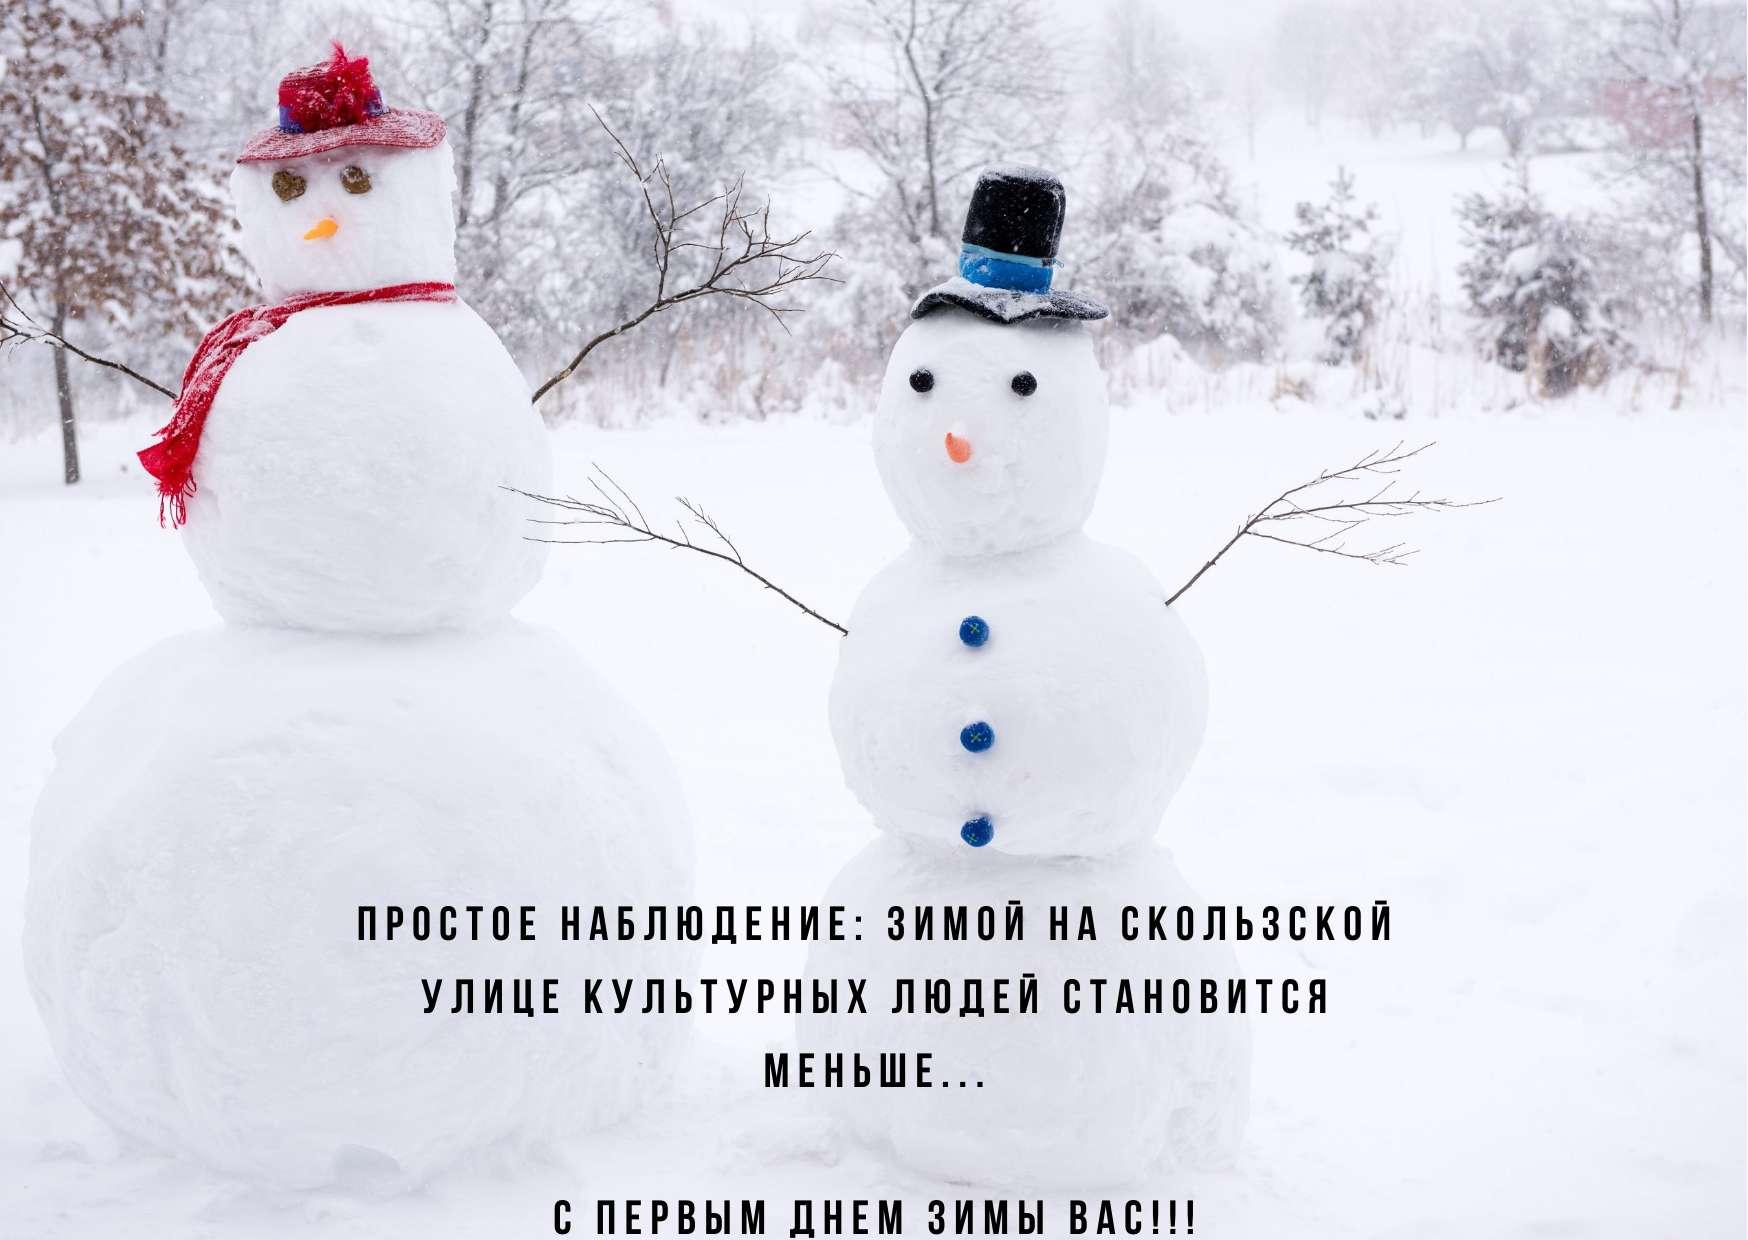 Открытка с Первым Днём Зимы, со снегирём и пожеланием • Аудио от Путина,  голосовые, музыкальные